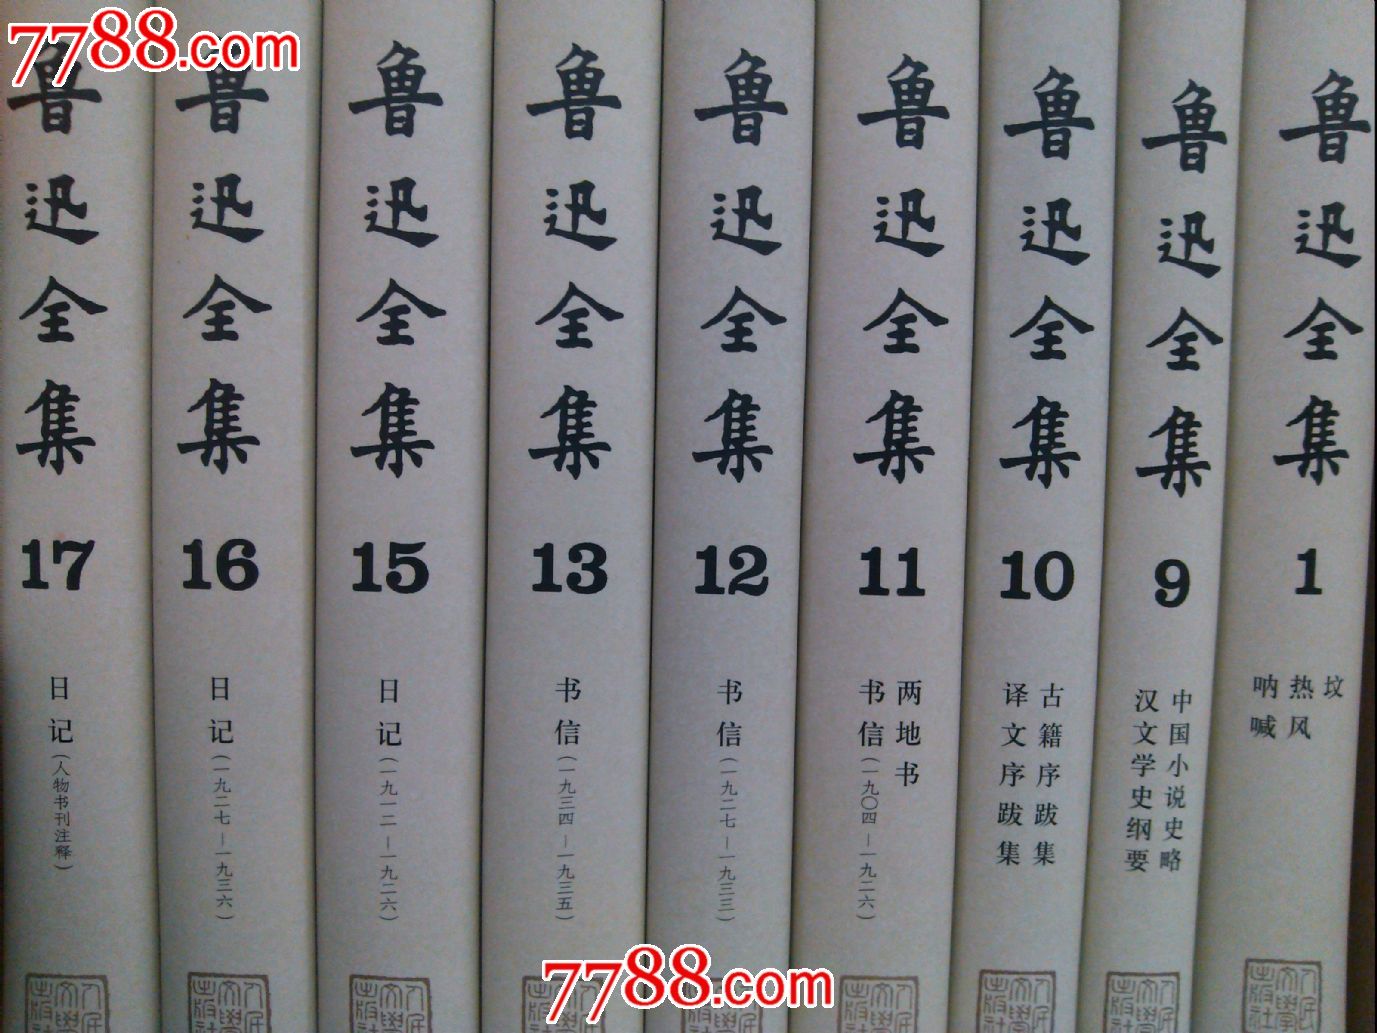 鲁迅全集-价格:646元-se16674312-新版书籍-零